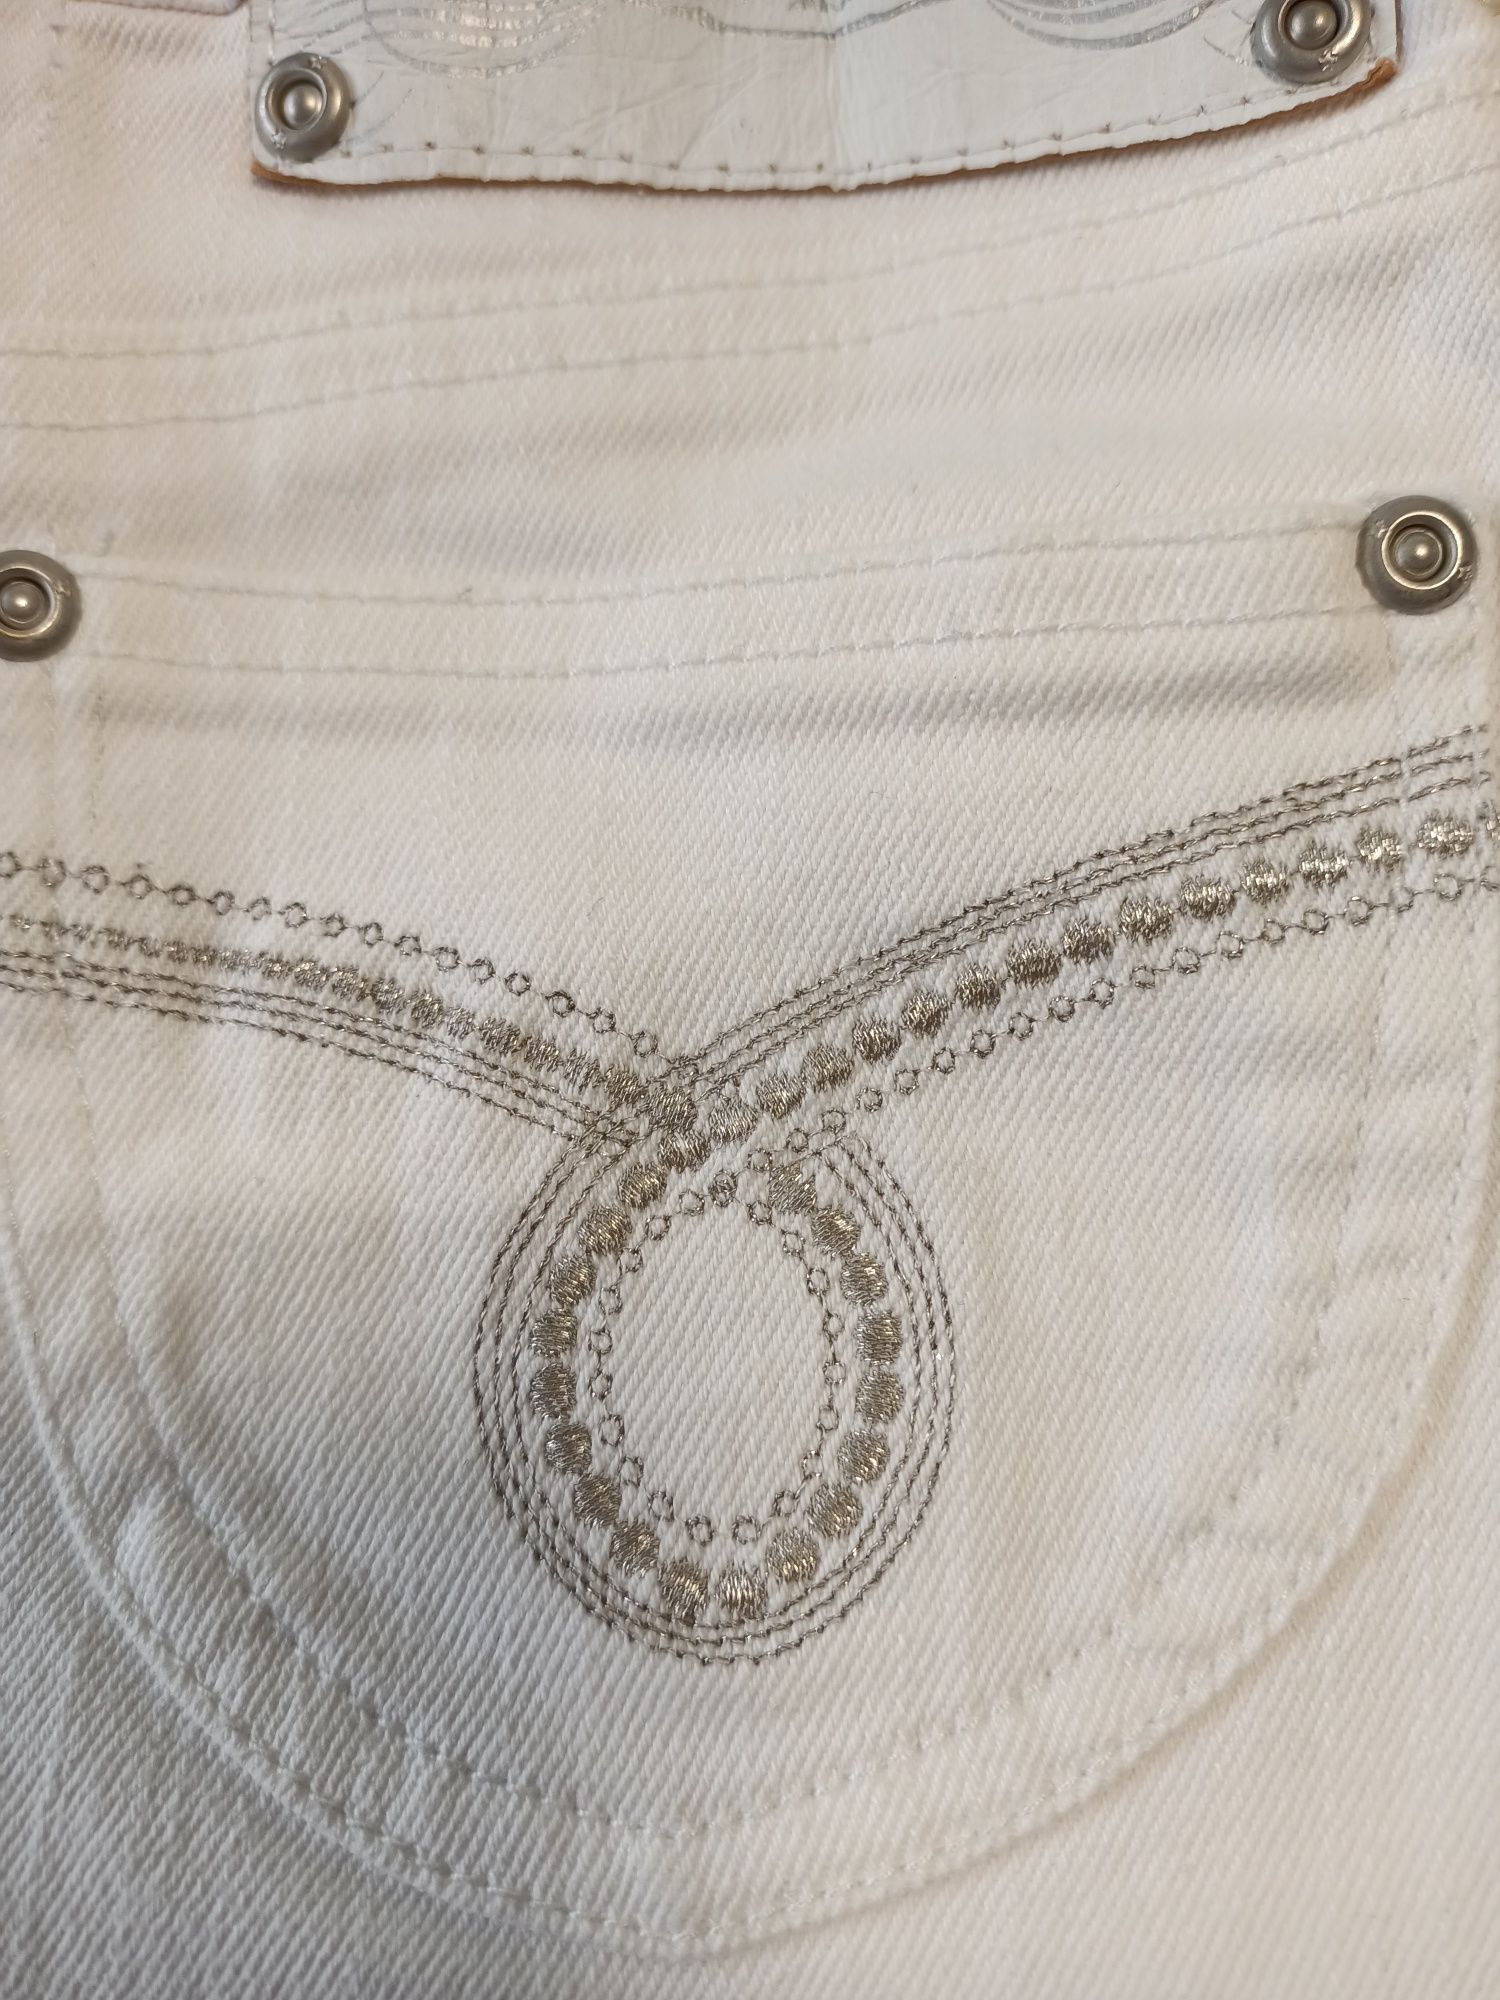 Юбка джинсовая, рост 116-122